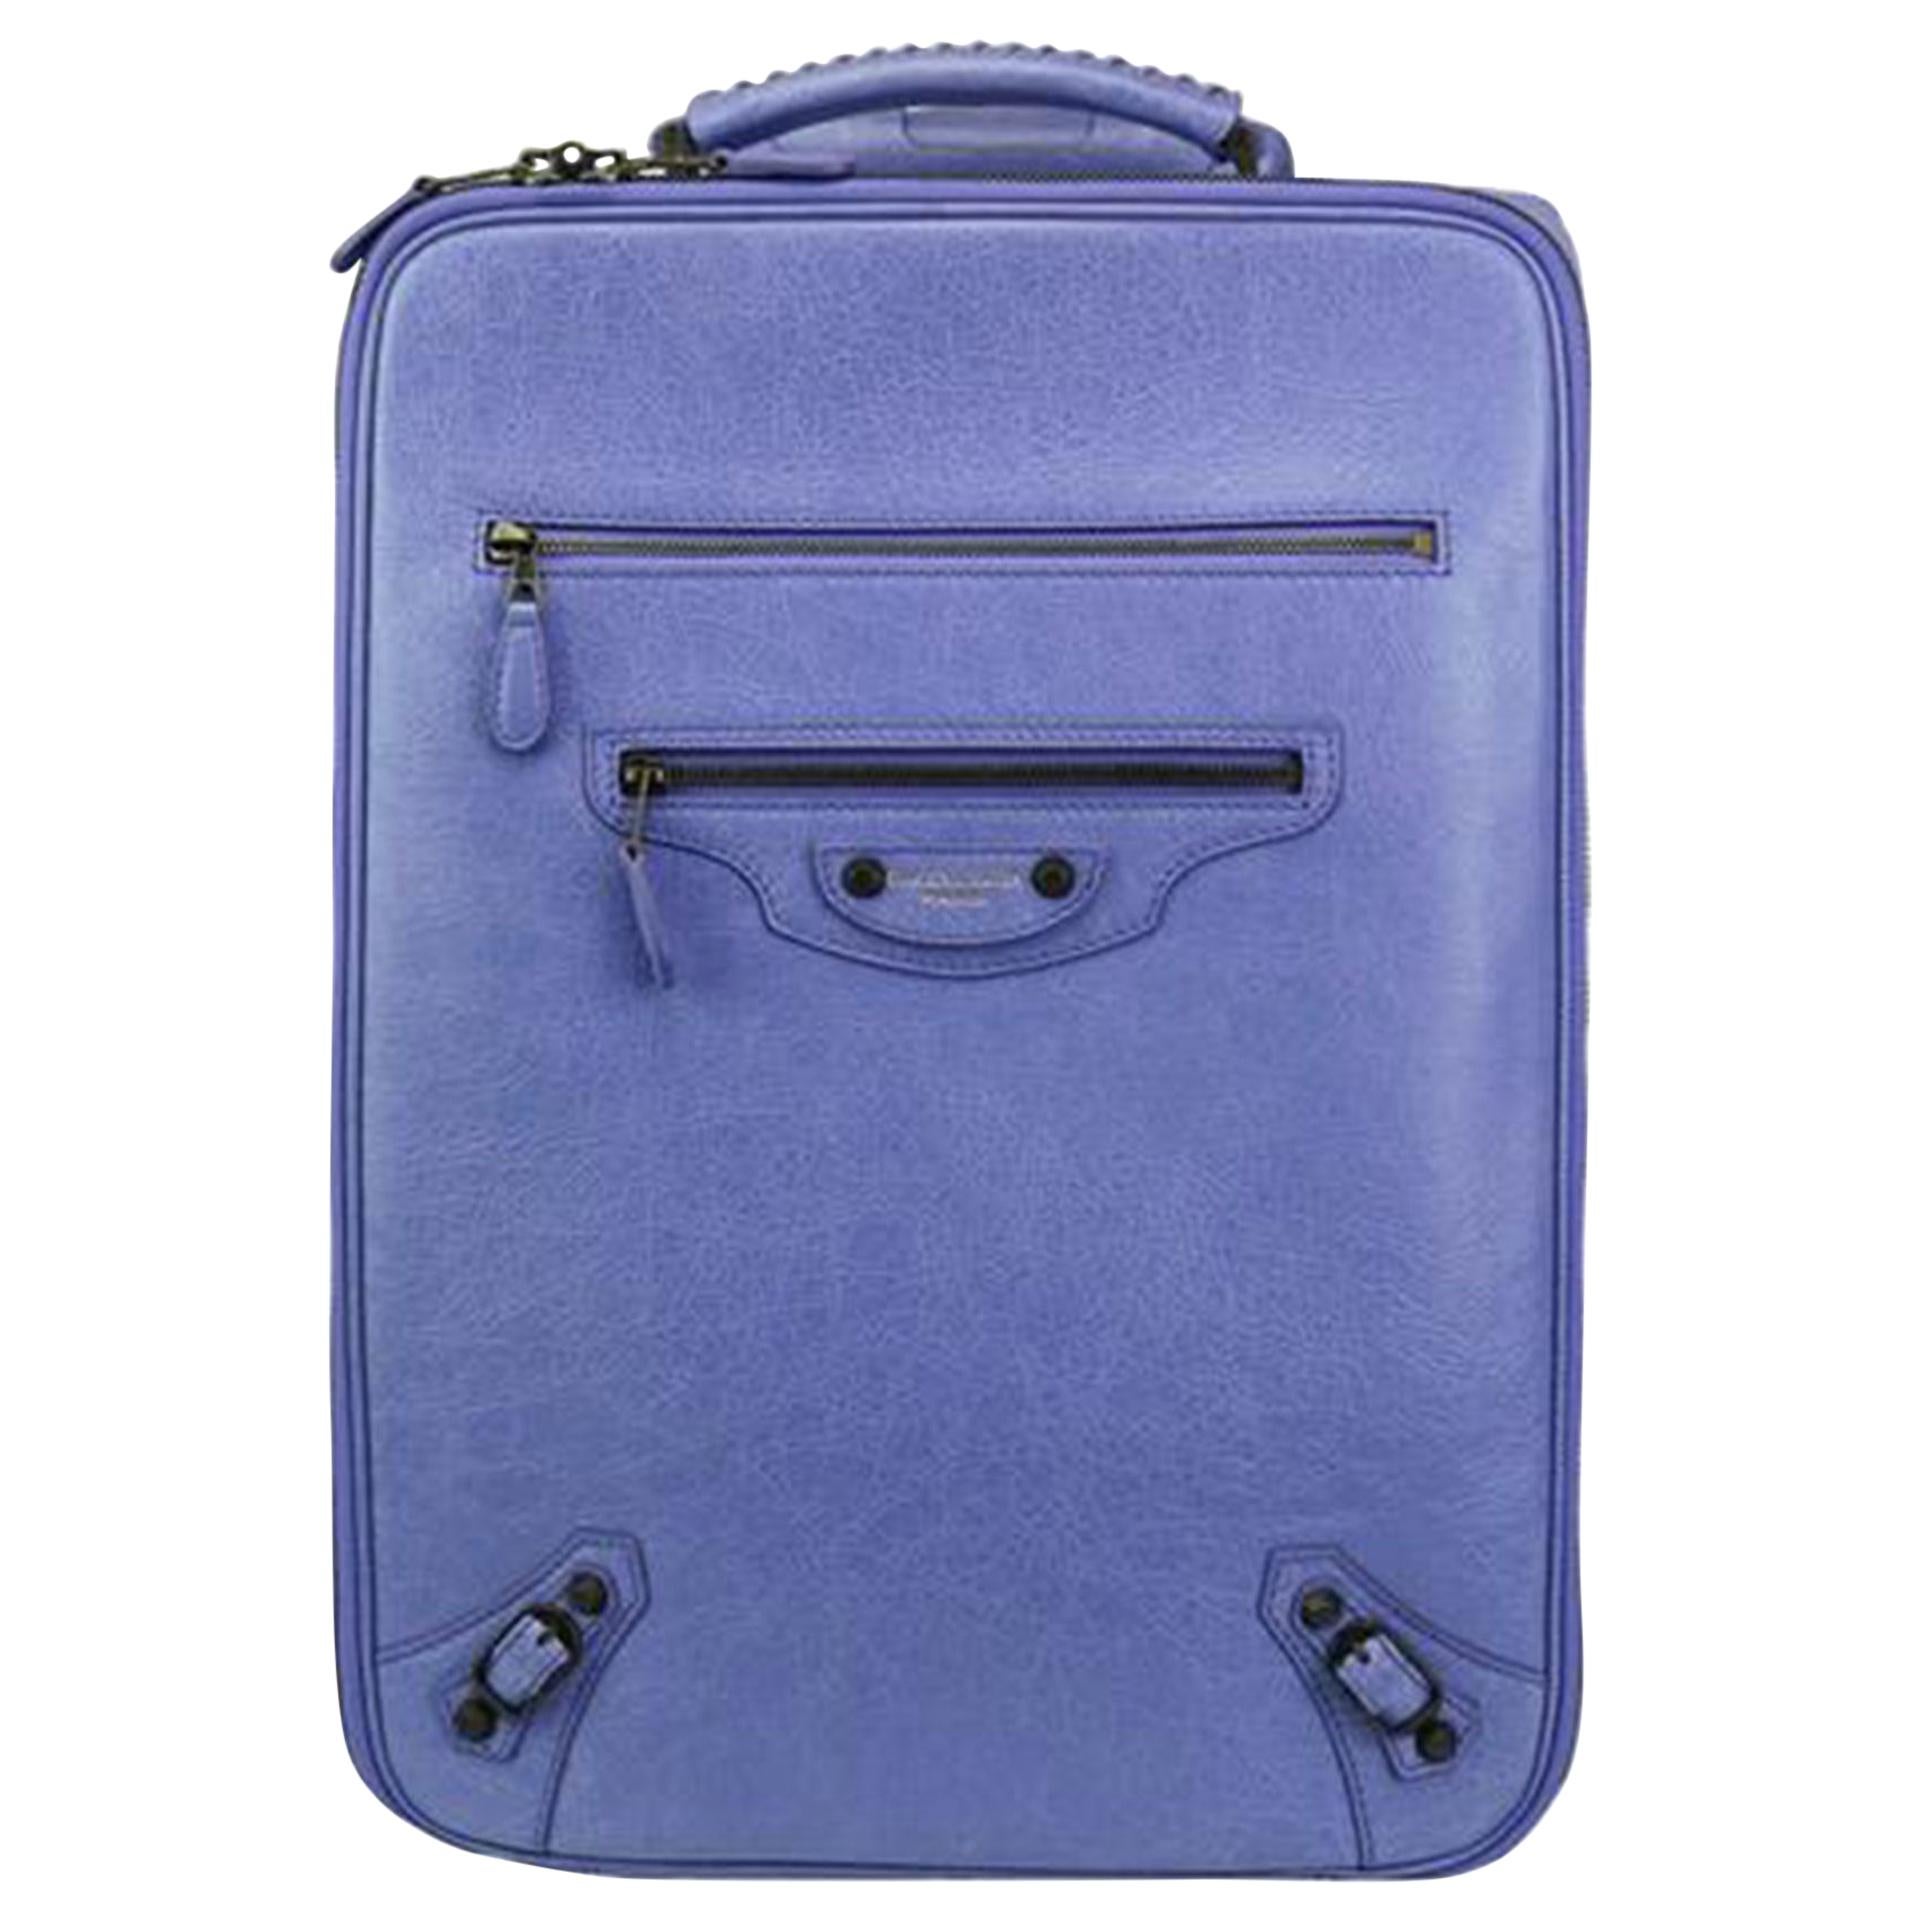 Balenciaga 2013 Rare Limited Edition Periwinkle Blue Jacynthe Wheeled Carry-On

Balenciaga Wheeled Carry-On, mit weichem Lammfell und charakteristischen Messingbeschlägen.
Schwarzes, perforiertes, weiches Lammleder mit Messingbeschlägen,